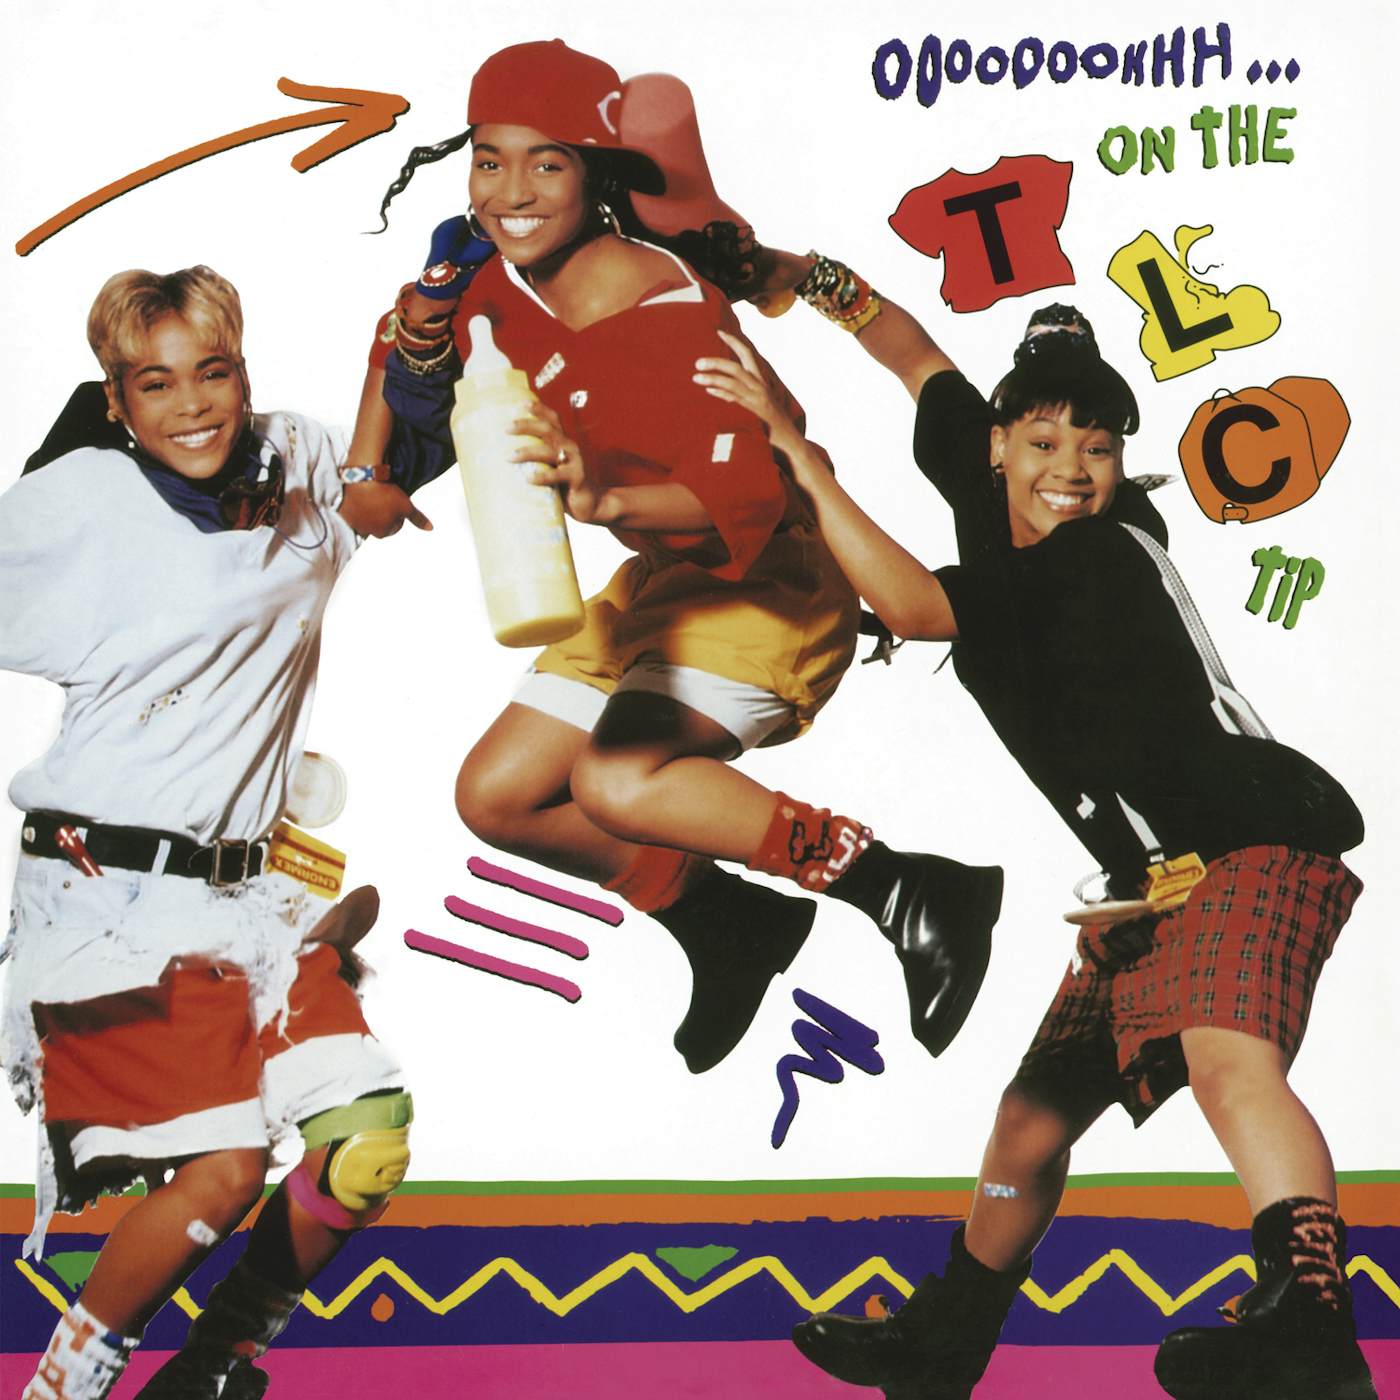 OOOOOOOHHH ON THE TLC TIP Vinyl Record